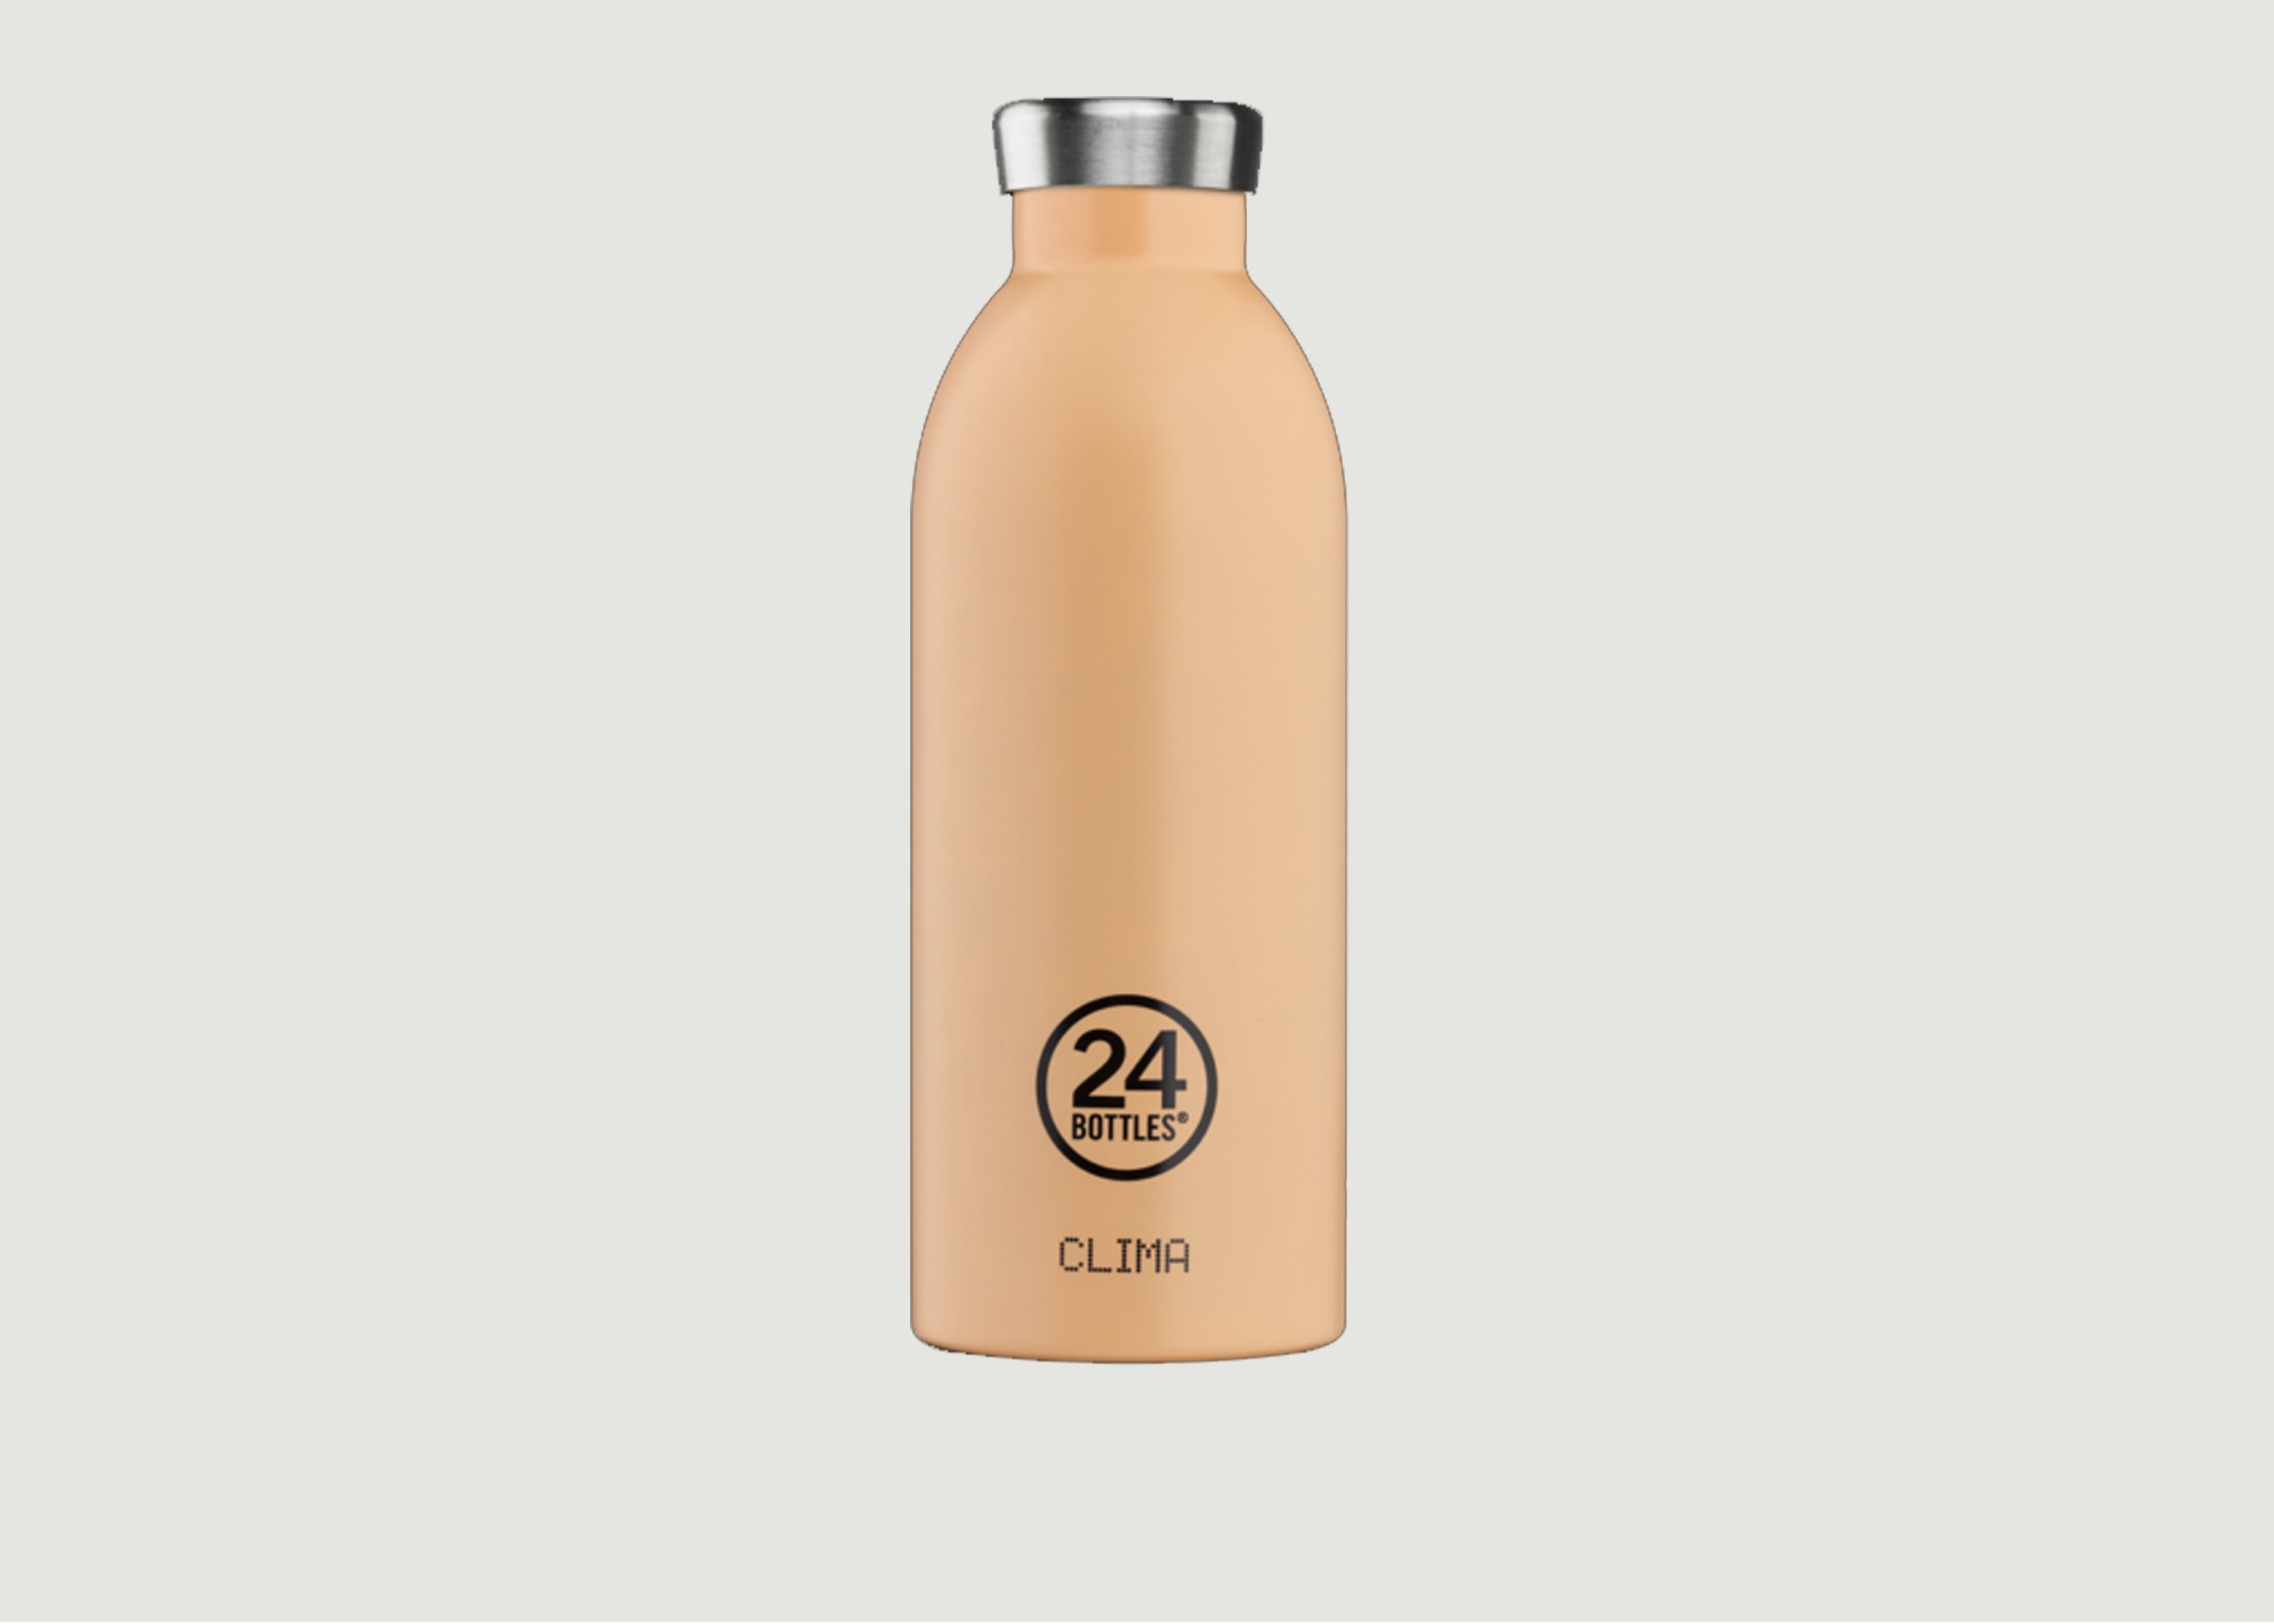 Clima Flasche 500 ml - 24 Bottles